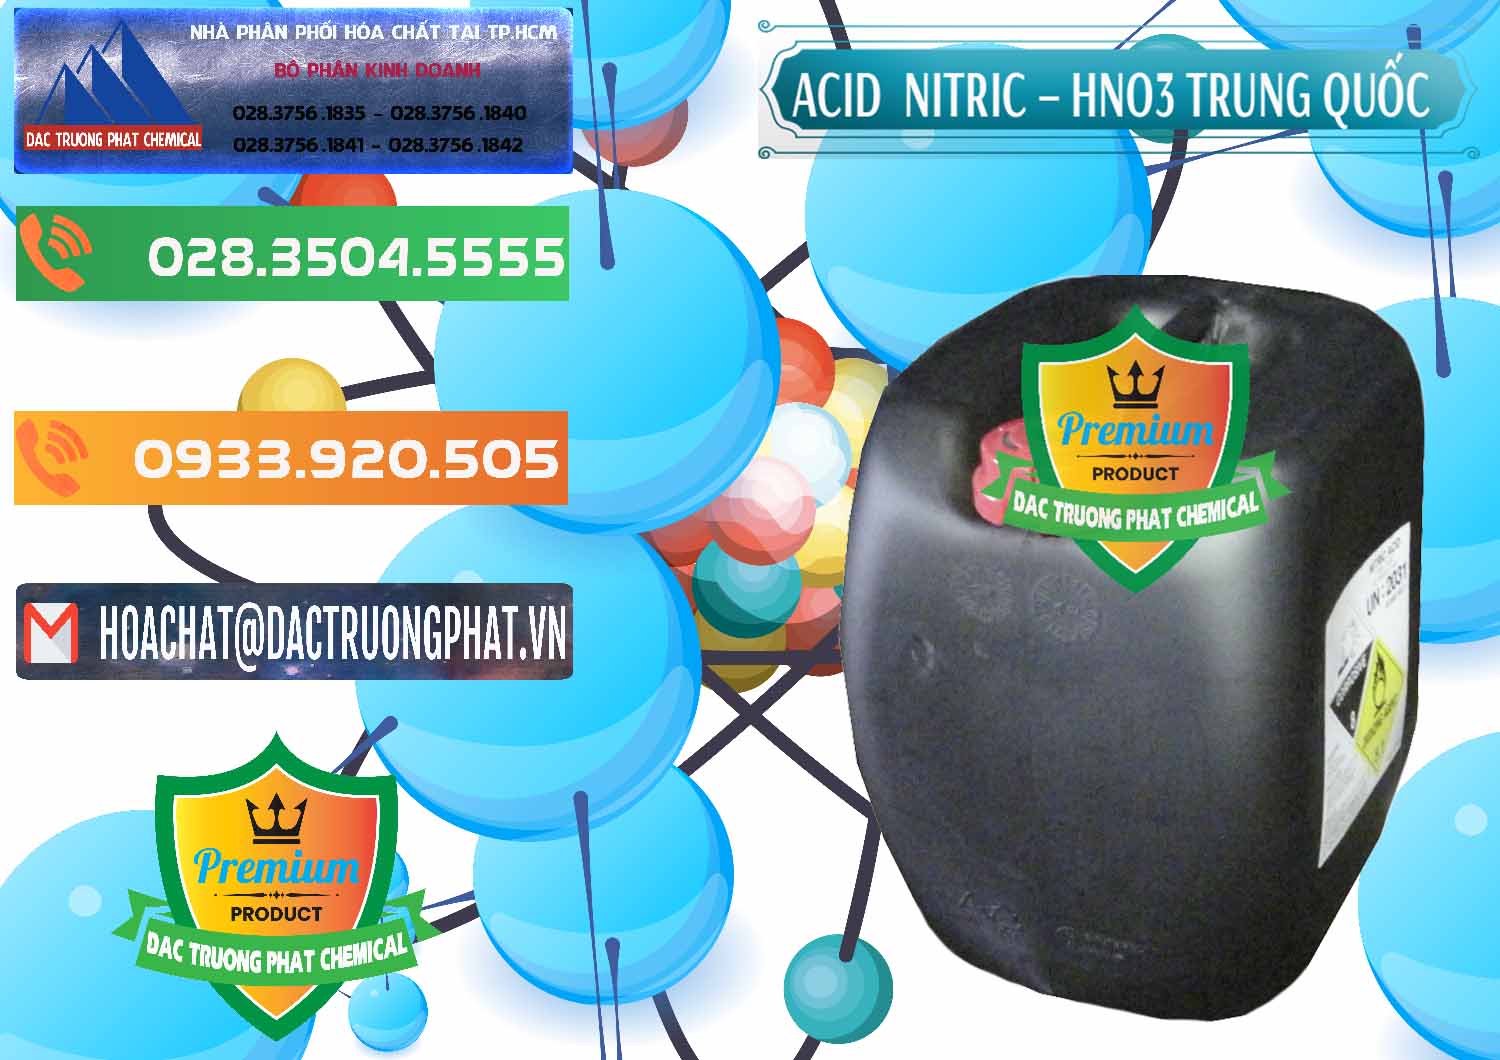 Cty chuyên nhập khẩu & bán Acid Nitric – Axit Nitric HNO3 68% Trung Quốc China - 0343 - Cty chuyên bán & phân phối hóa chất tại TP.HCM - hoachatxulynuoc.com.vn